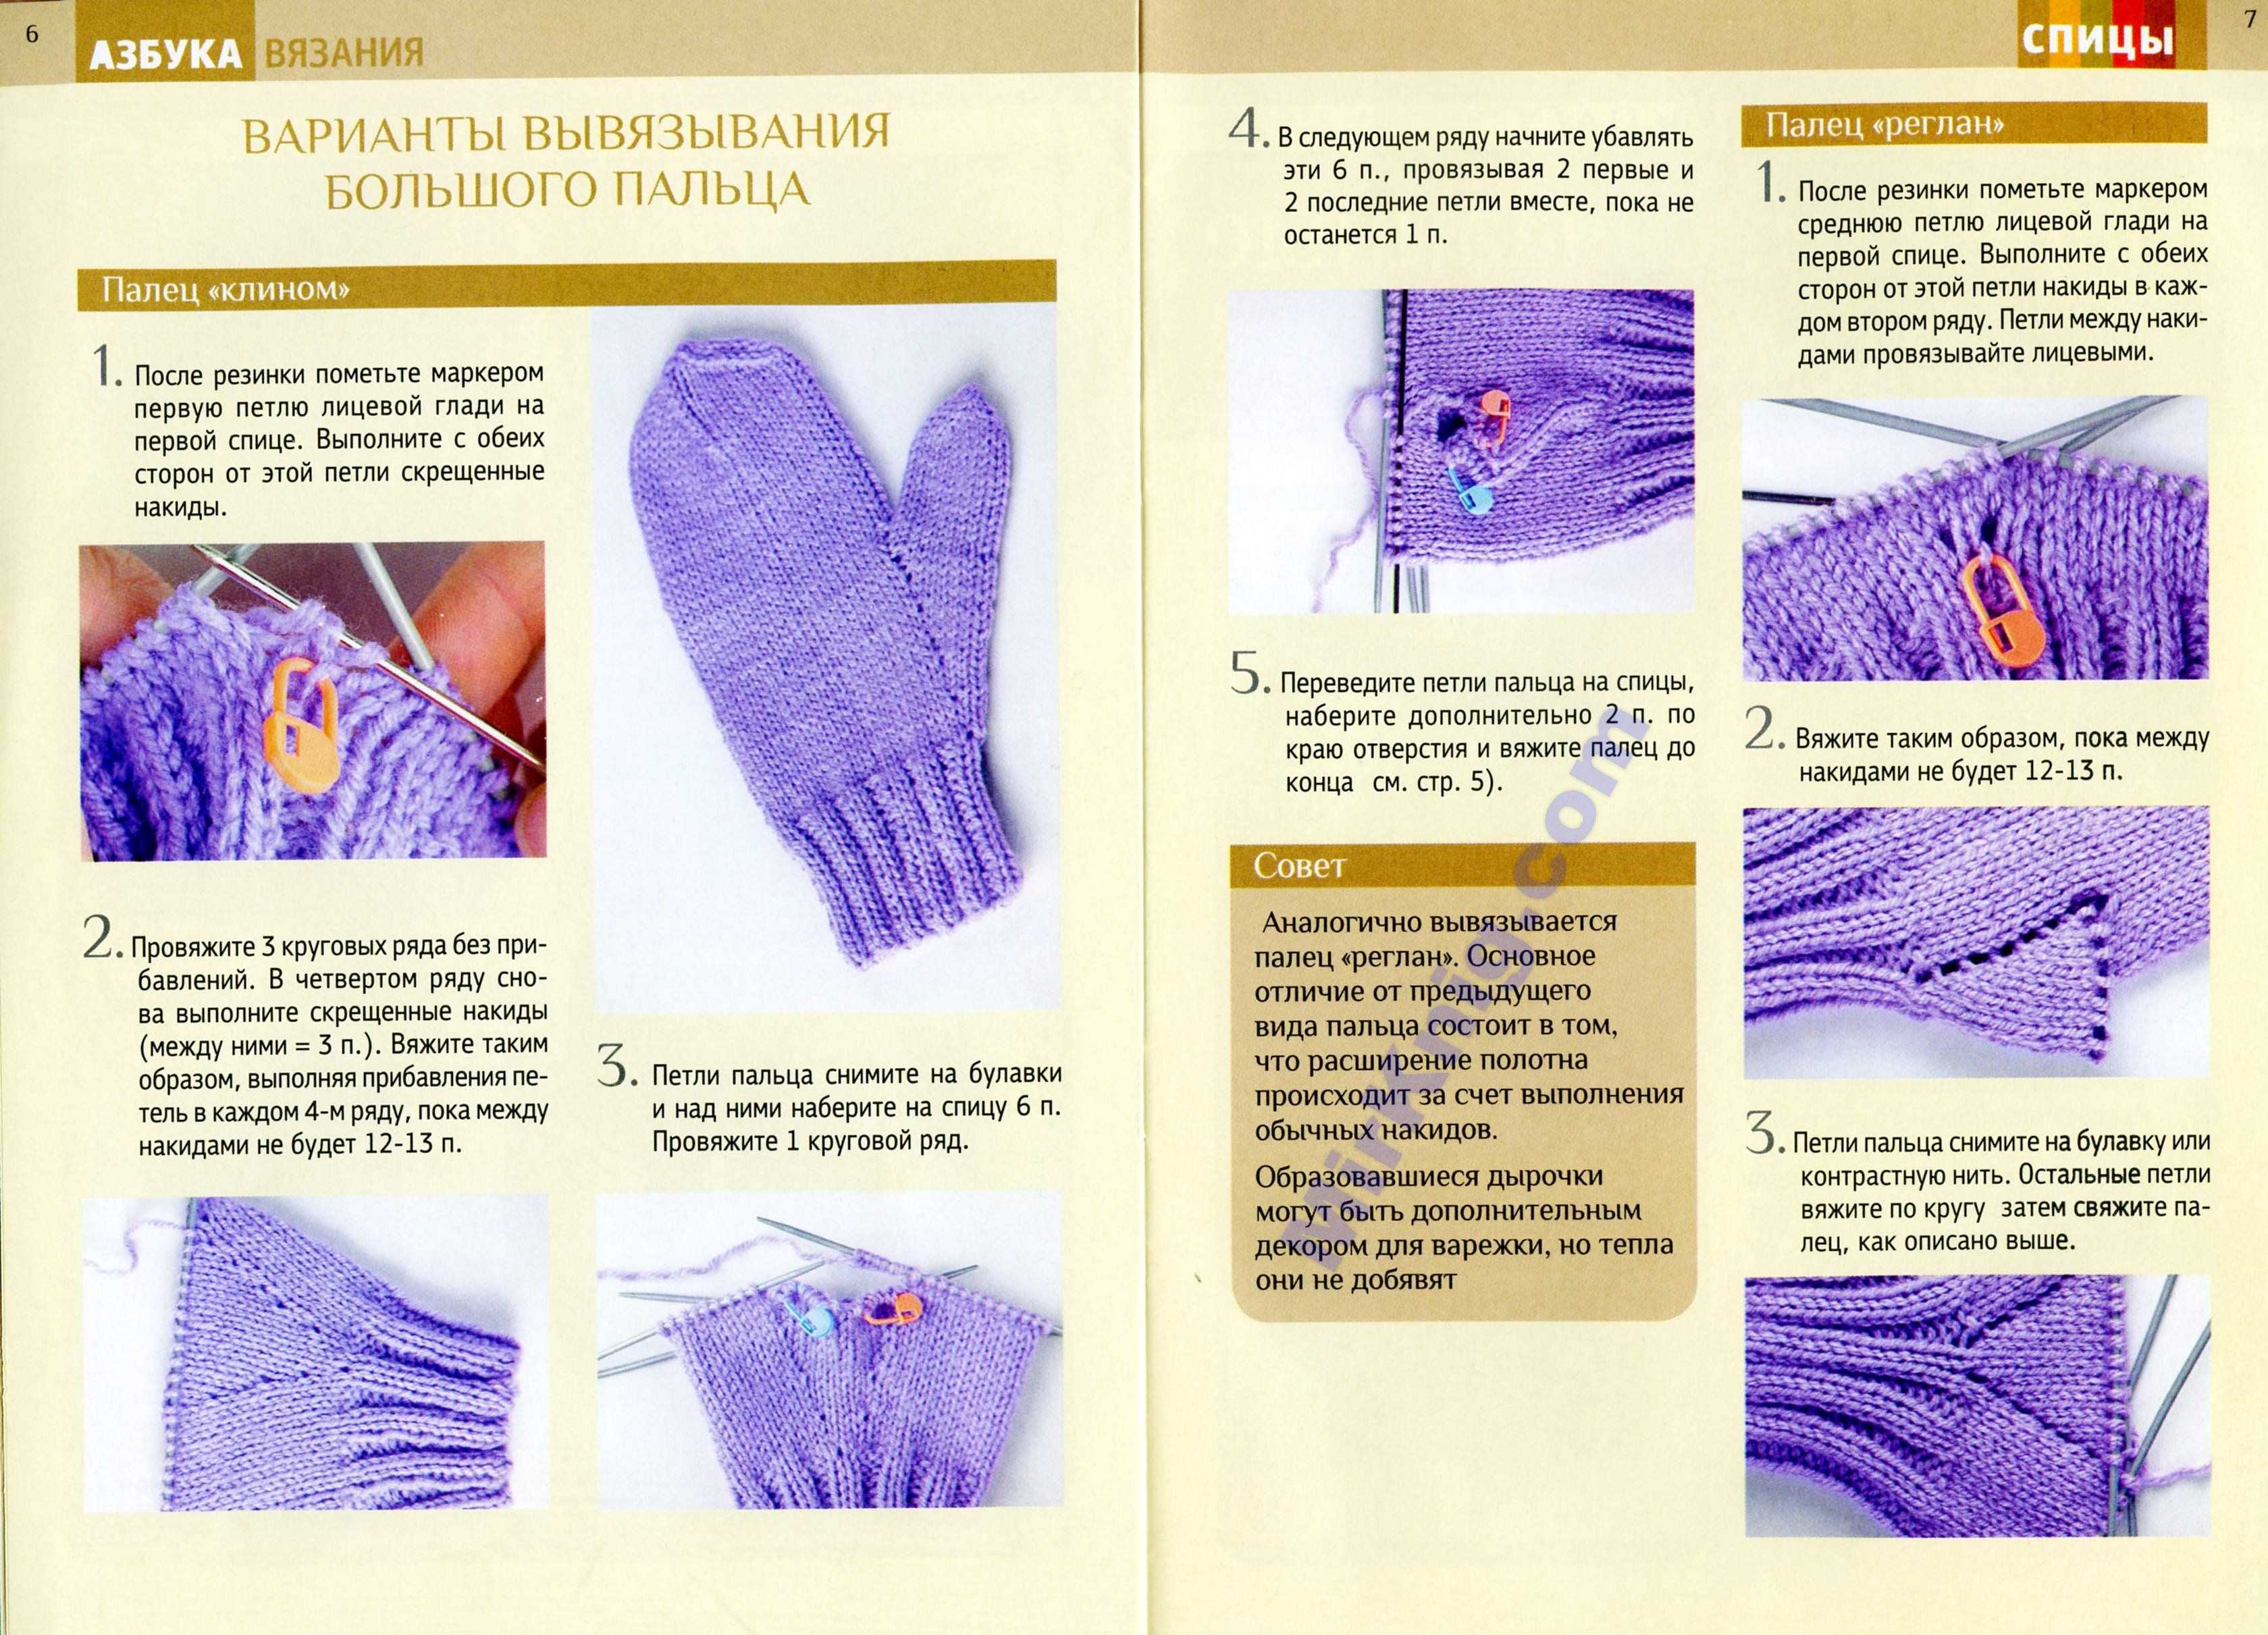 Как связать двойные варежки спицами - пошаговая инструкция с фото